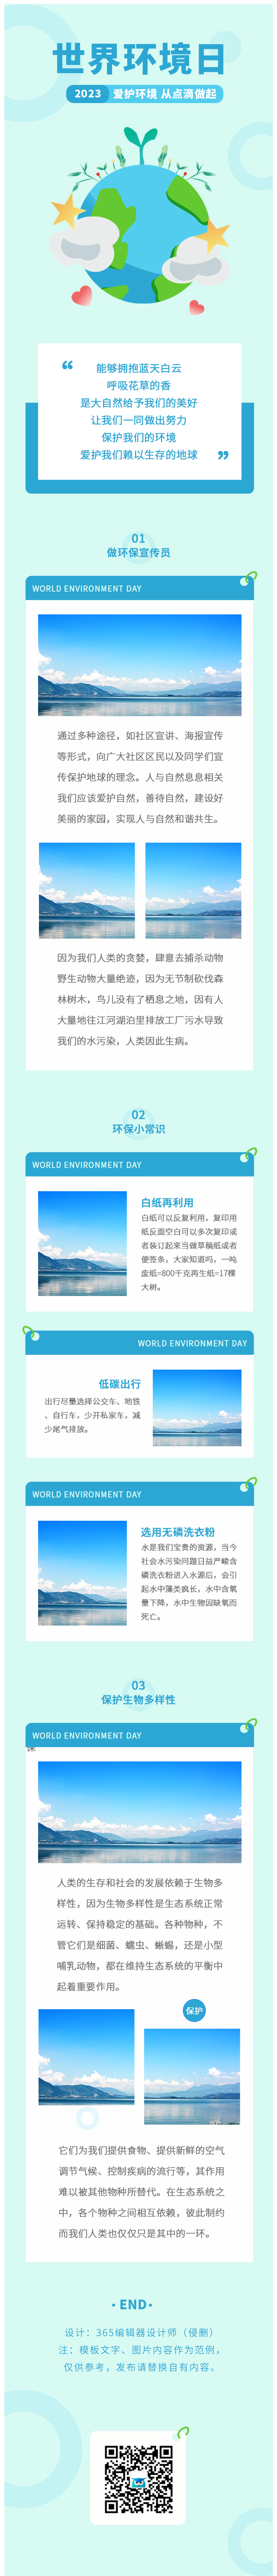 世界环境日环保爱护环境地球环保科普常识